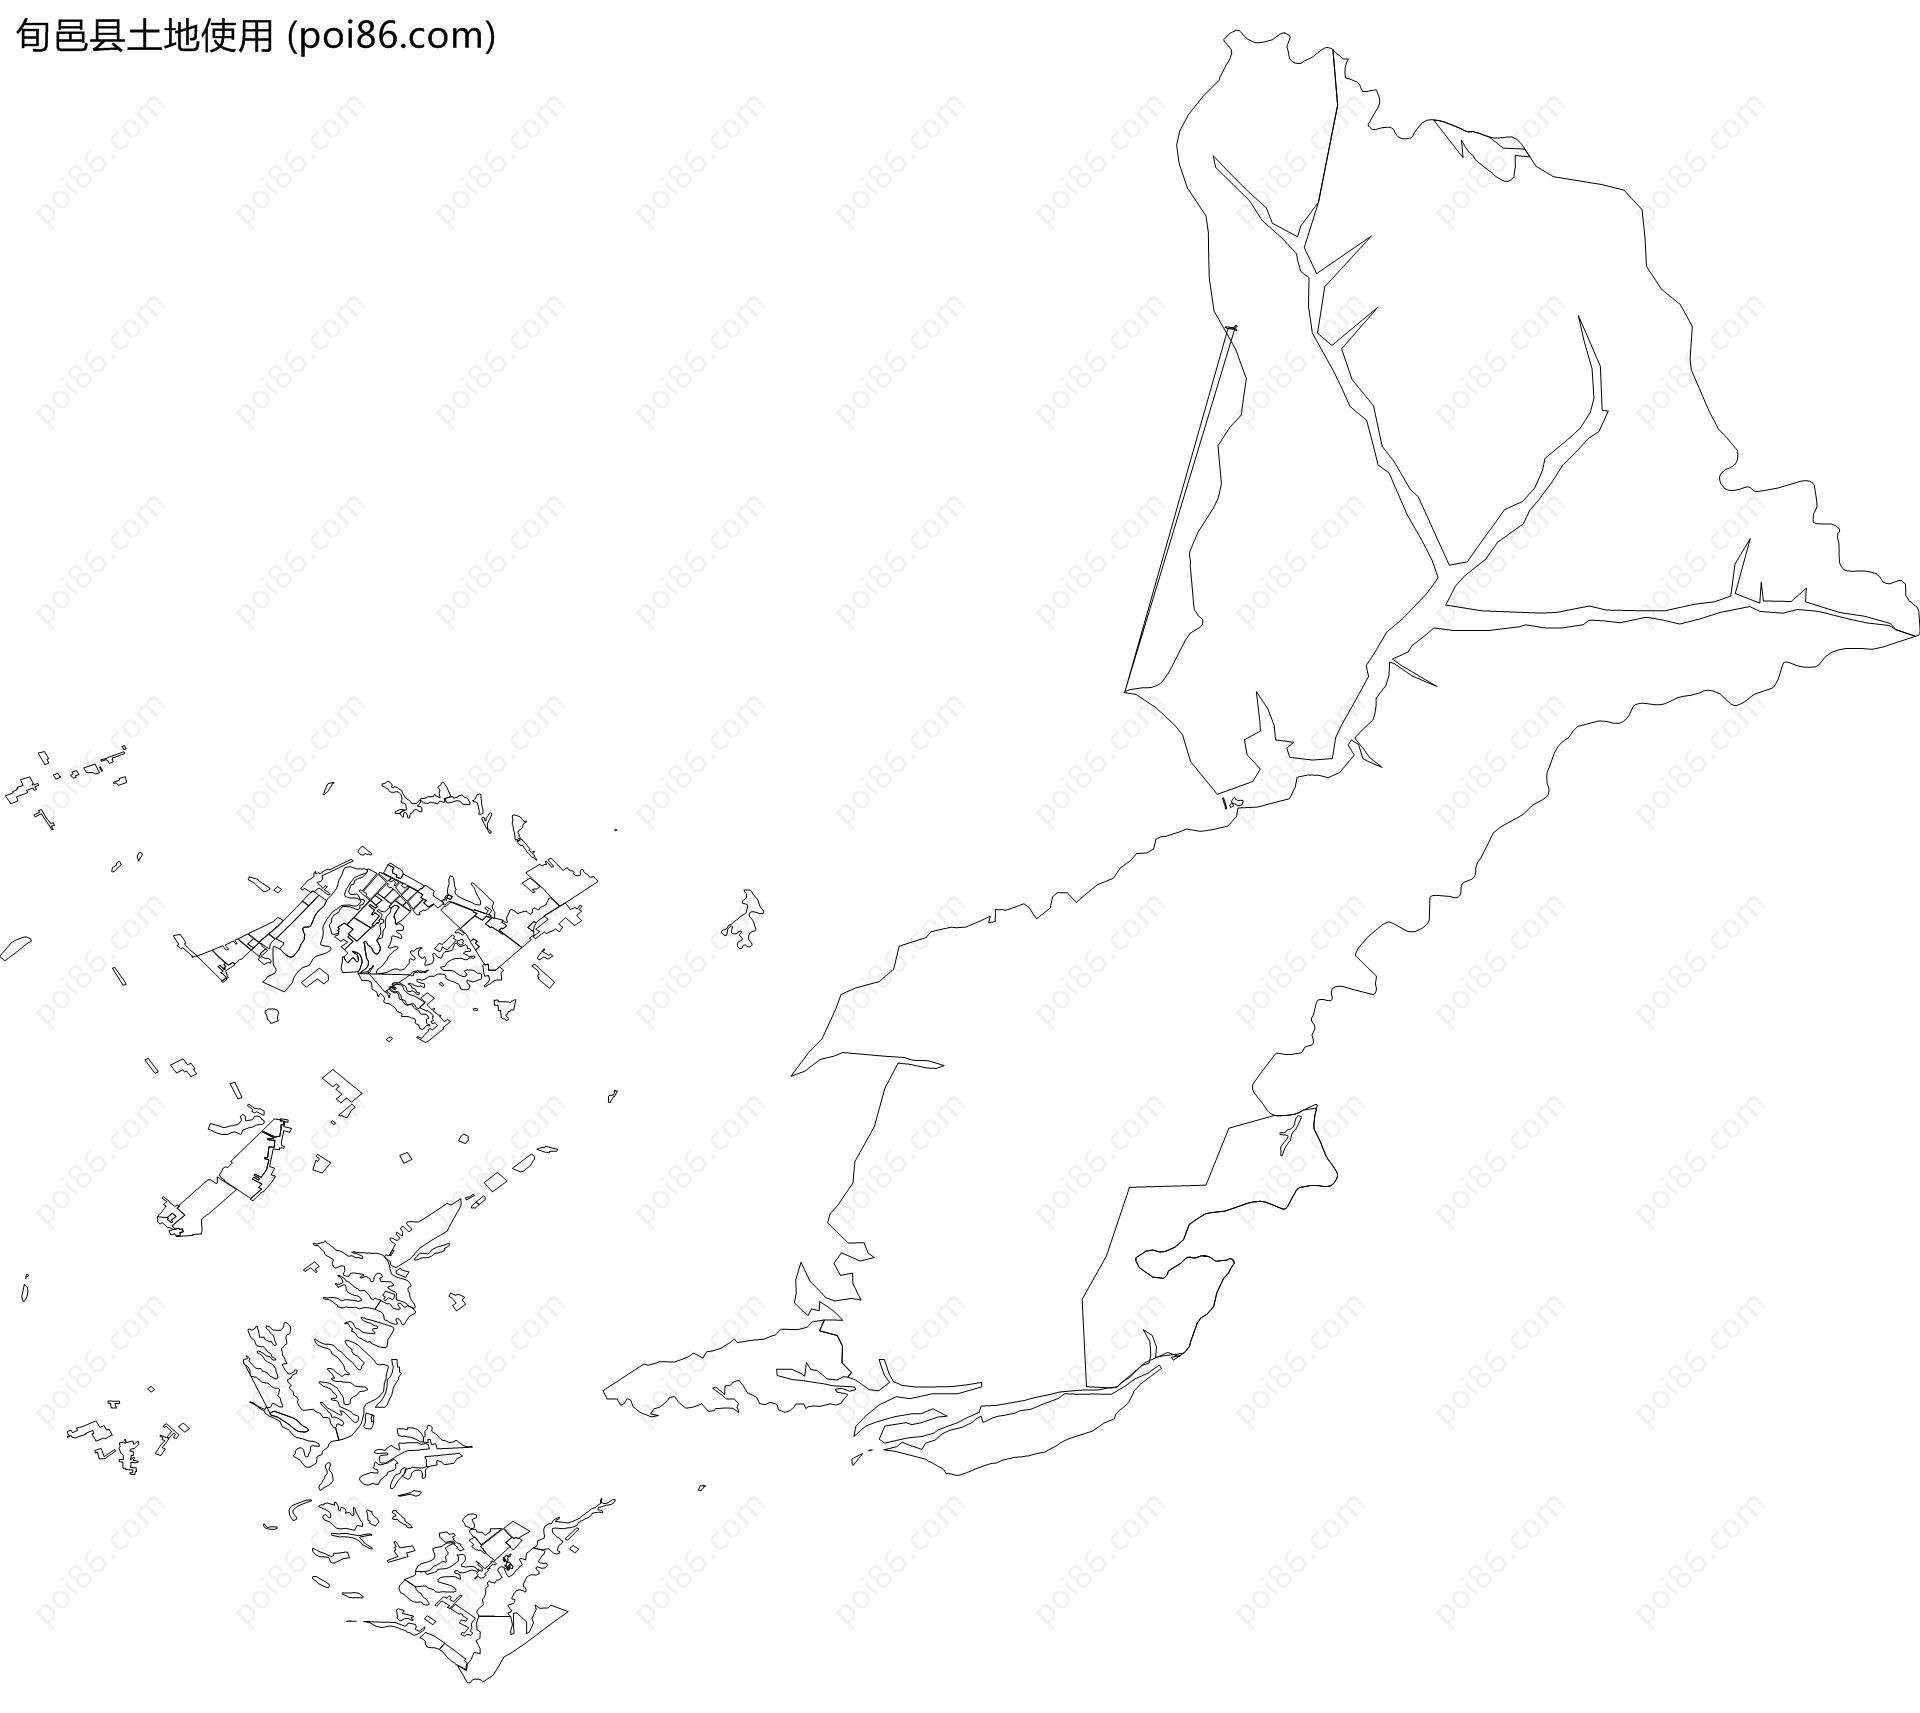 旬邑县土地使用地图